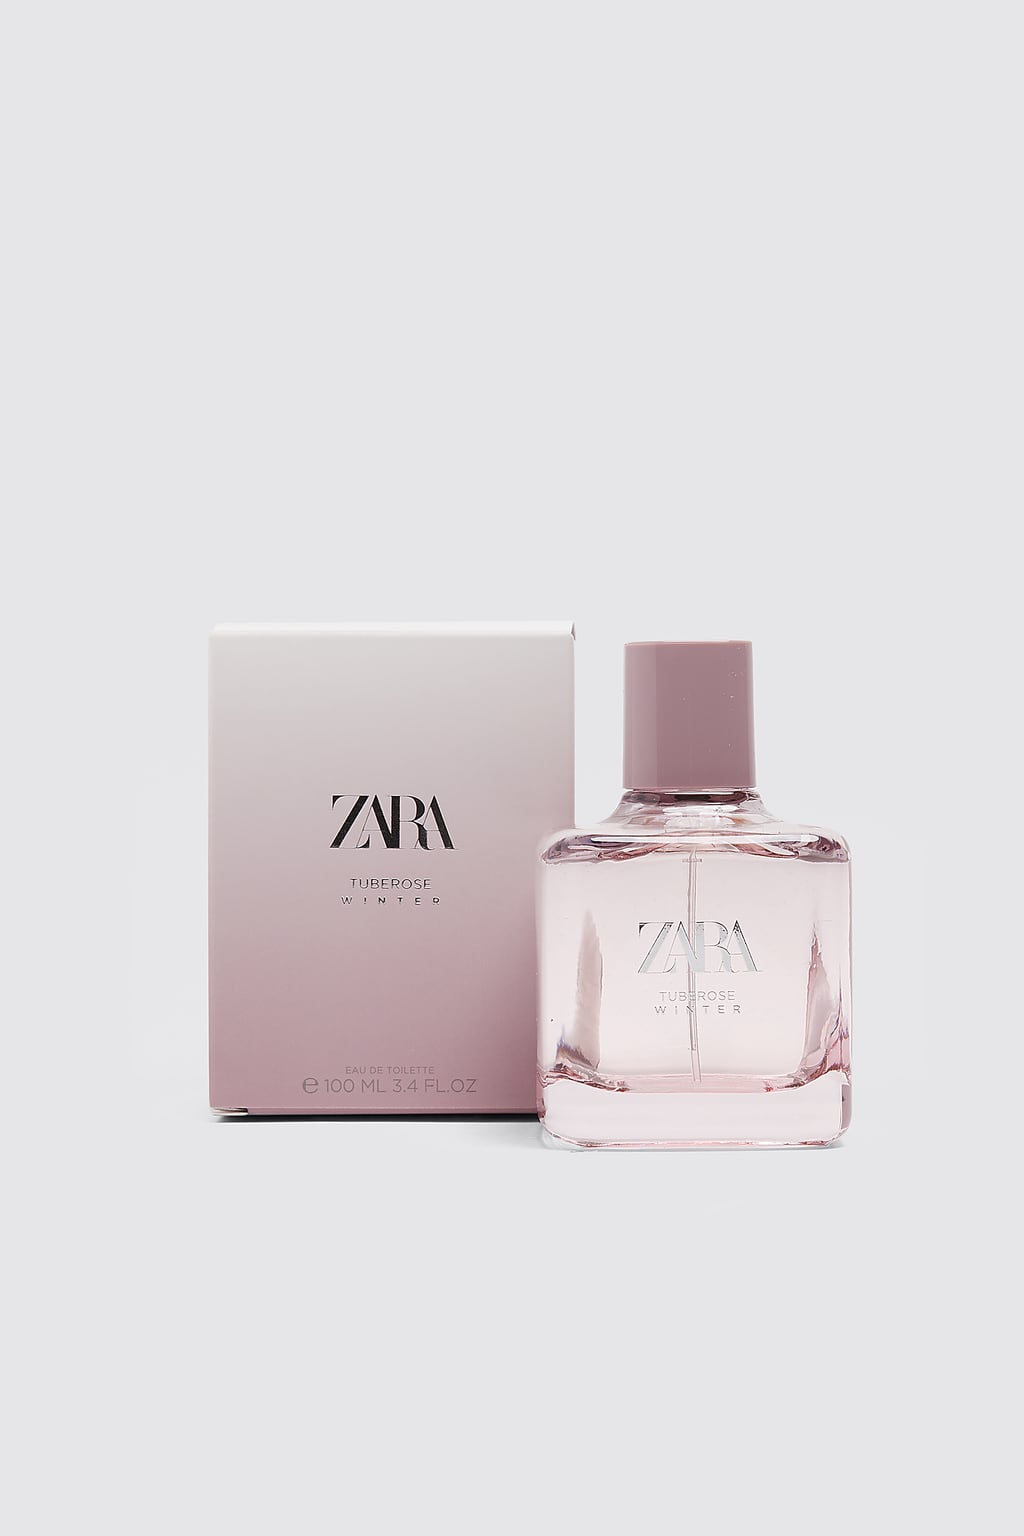 Tuberose Winter Zara Parfum - ein neues Parfum für Frauen 2019